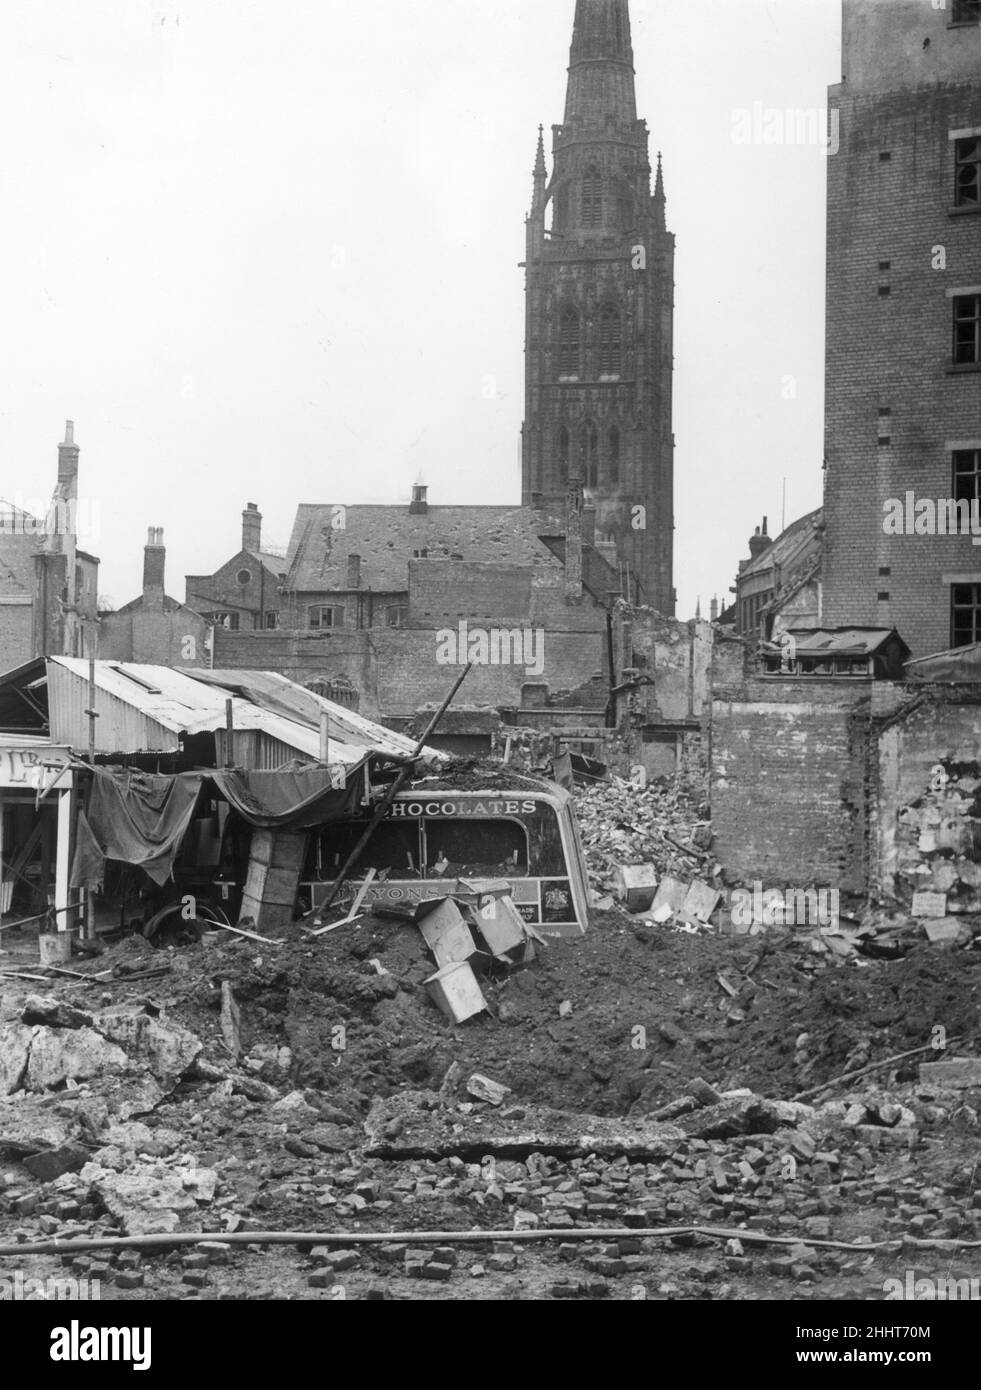 In den Trümmern der zerstörten Gebäude in Coventry liegt ein zerstörter Lieferwagen, nachdem die Stadt während des Zweiten Weltkriegs von der deutschen Luftwaffe bei einem Luftangriff ins Visier genommen wurde. November 1940. Stockfoto